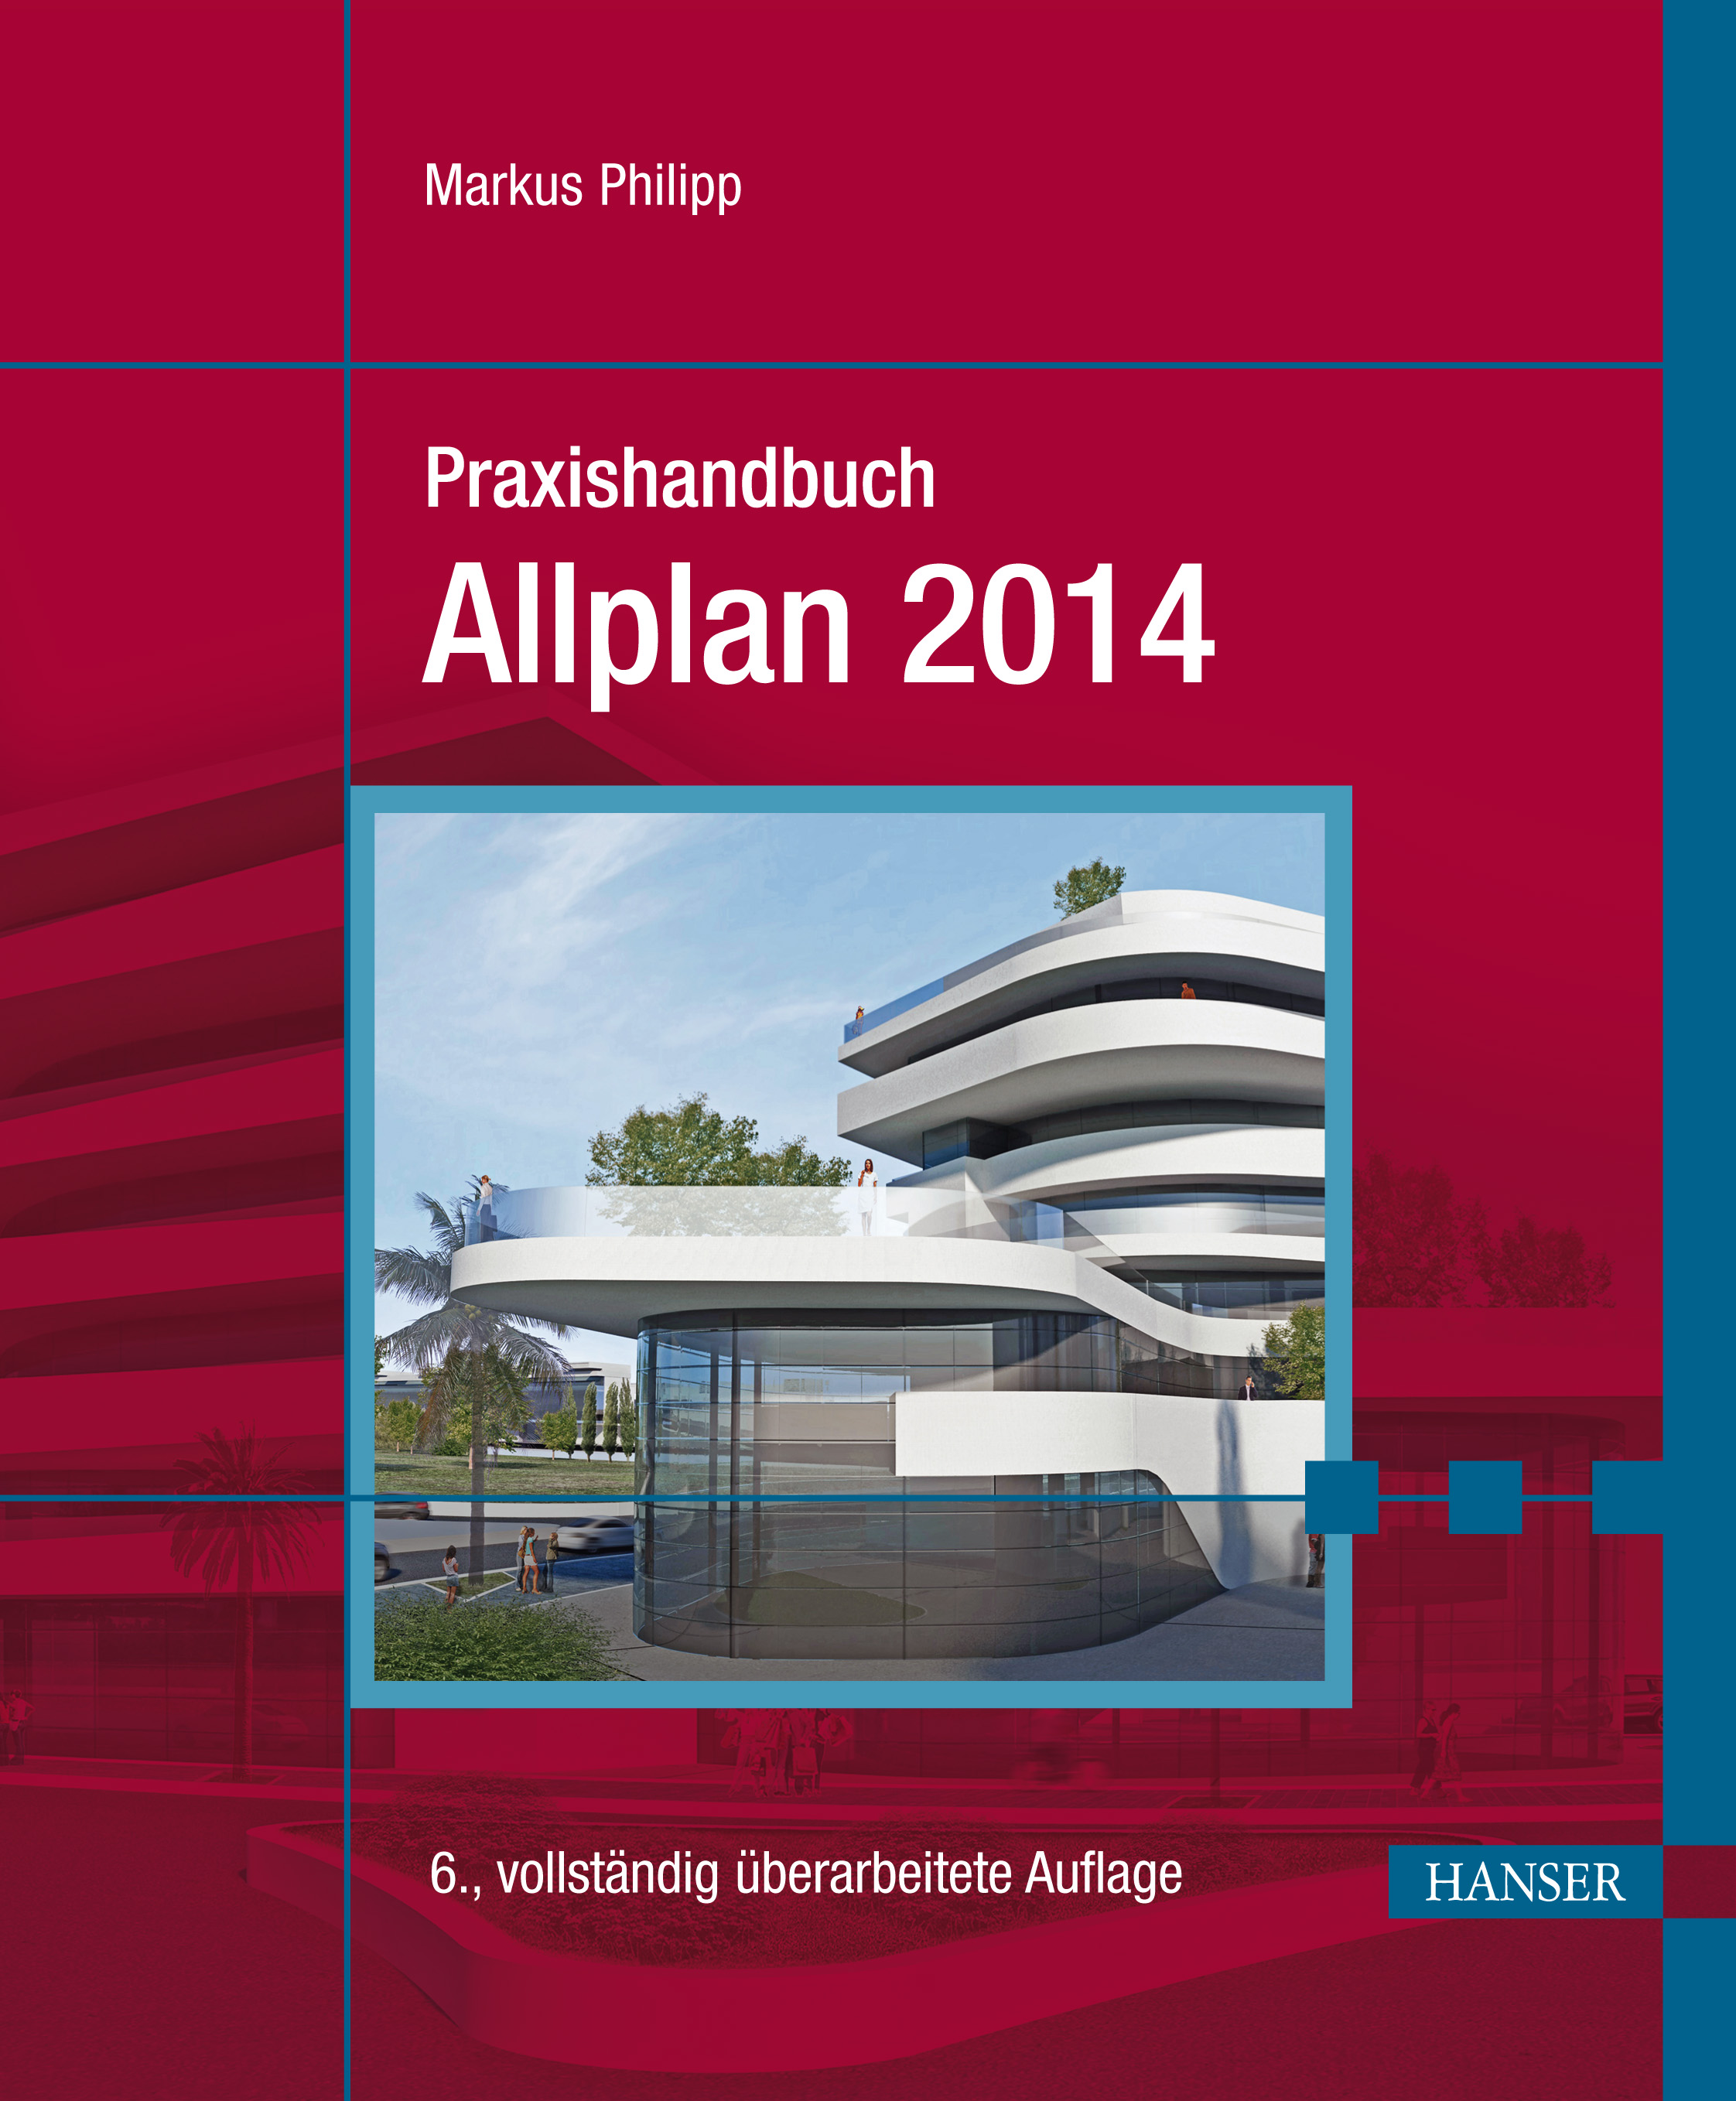 allplan 2014 free download